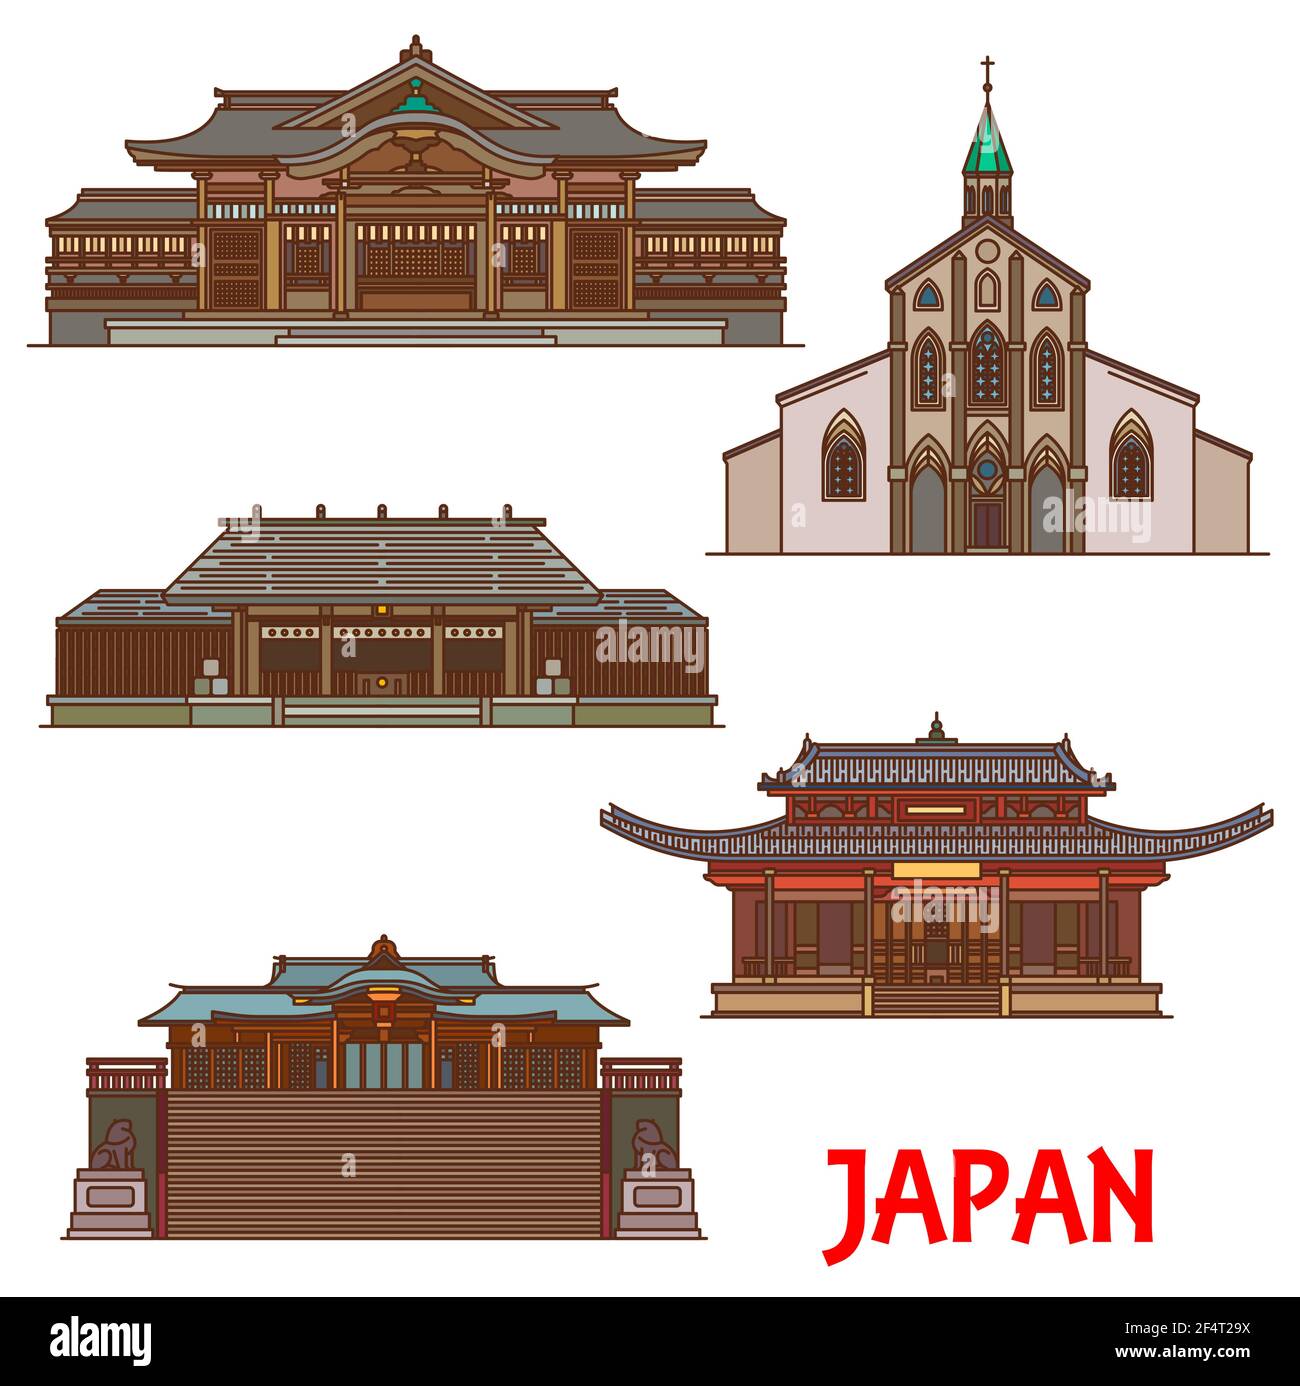 Architettura e monumenti giapponesi, templi e pagode, edifici giapponesi vettoriali. I luoghi di interesse del Giappone e i santuari buddisti Takachiho-jinja e Aman Illustrazione Vettoriale